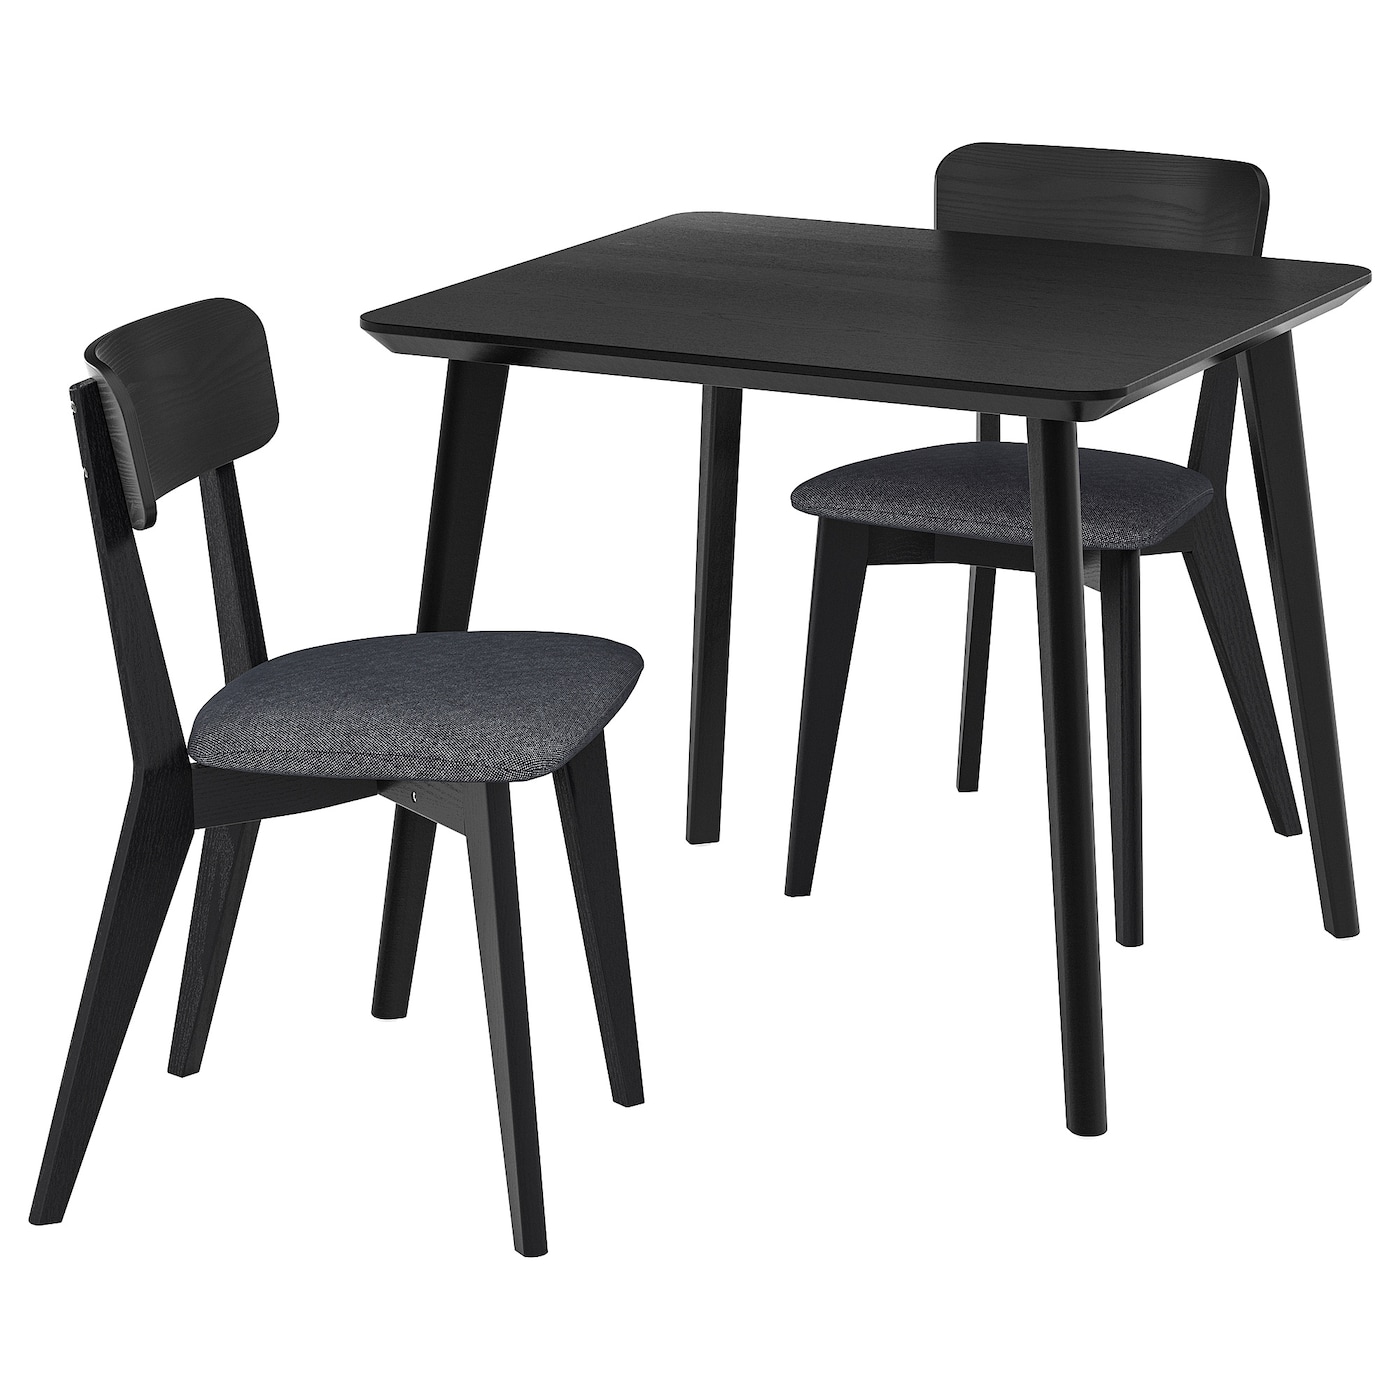 Стол и 2 стула -  LISABO IKEA/ ЛИСАБО ИКЕА,  88х78 см,   черный